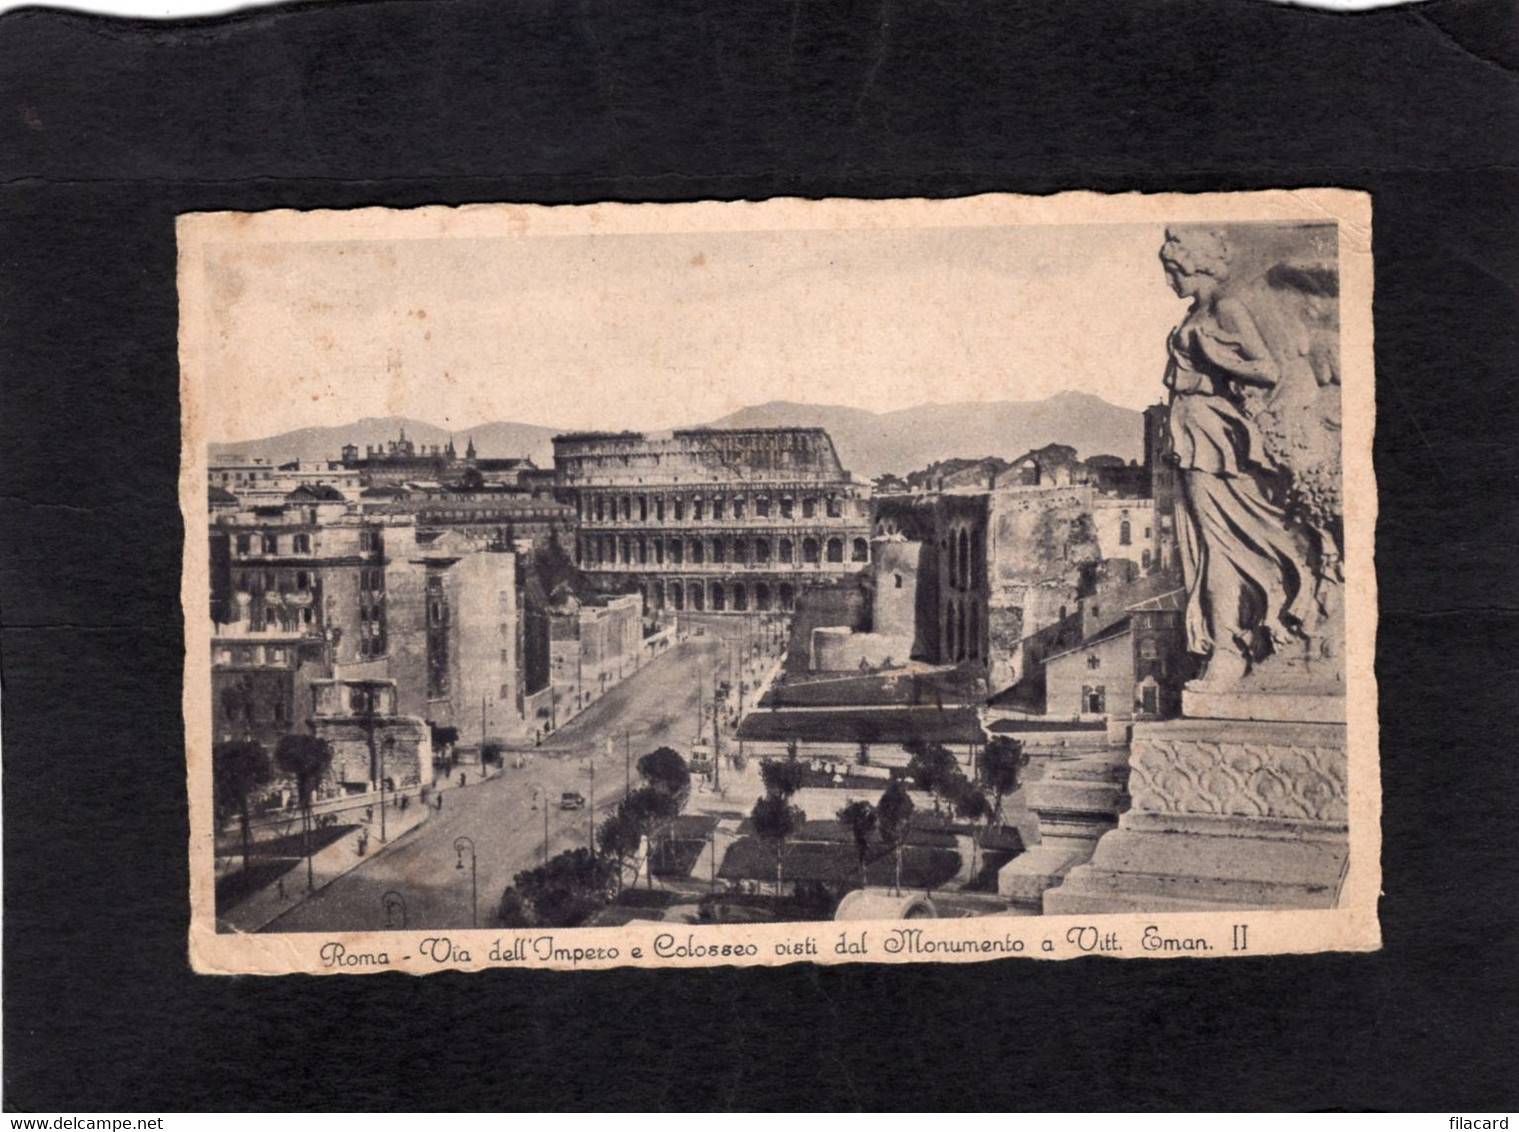 99086     Italia,    Roma,  Via  Dell"Impero  E Colosseo  Visti  Dal  Monumento  A Vitt.  Eman. II,  VG  1936 - Guidonia Montecelio